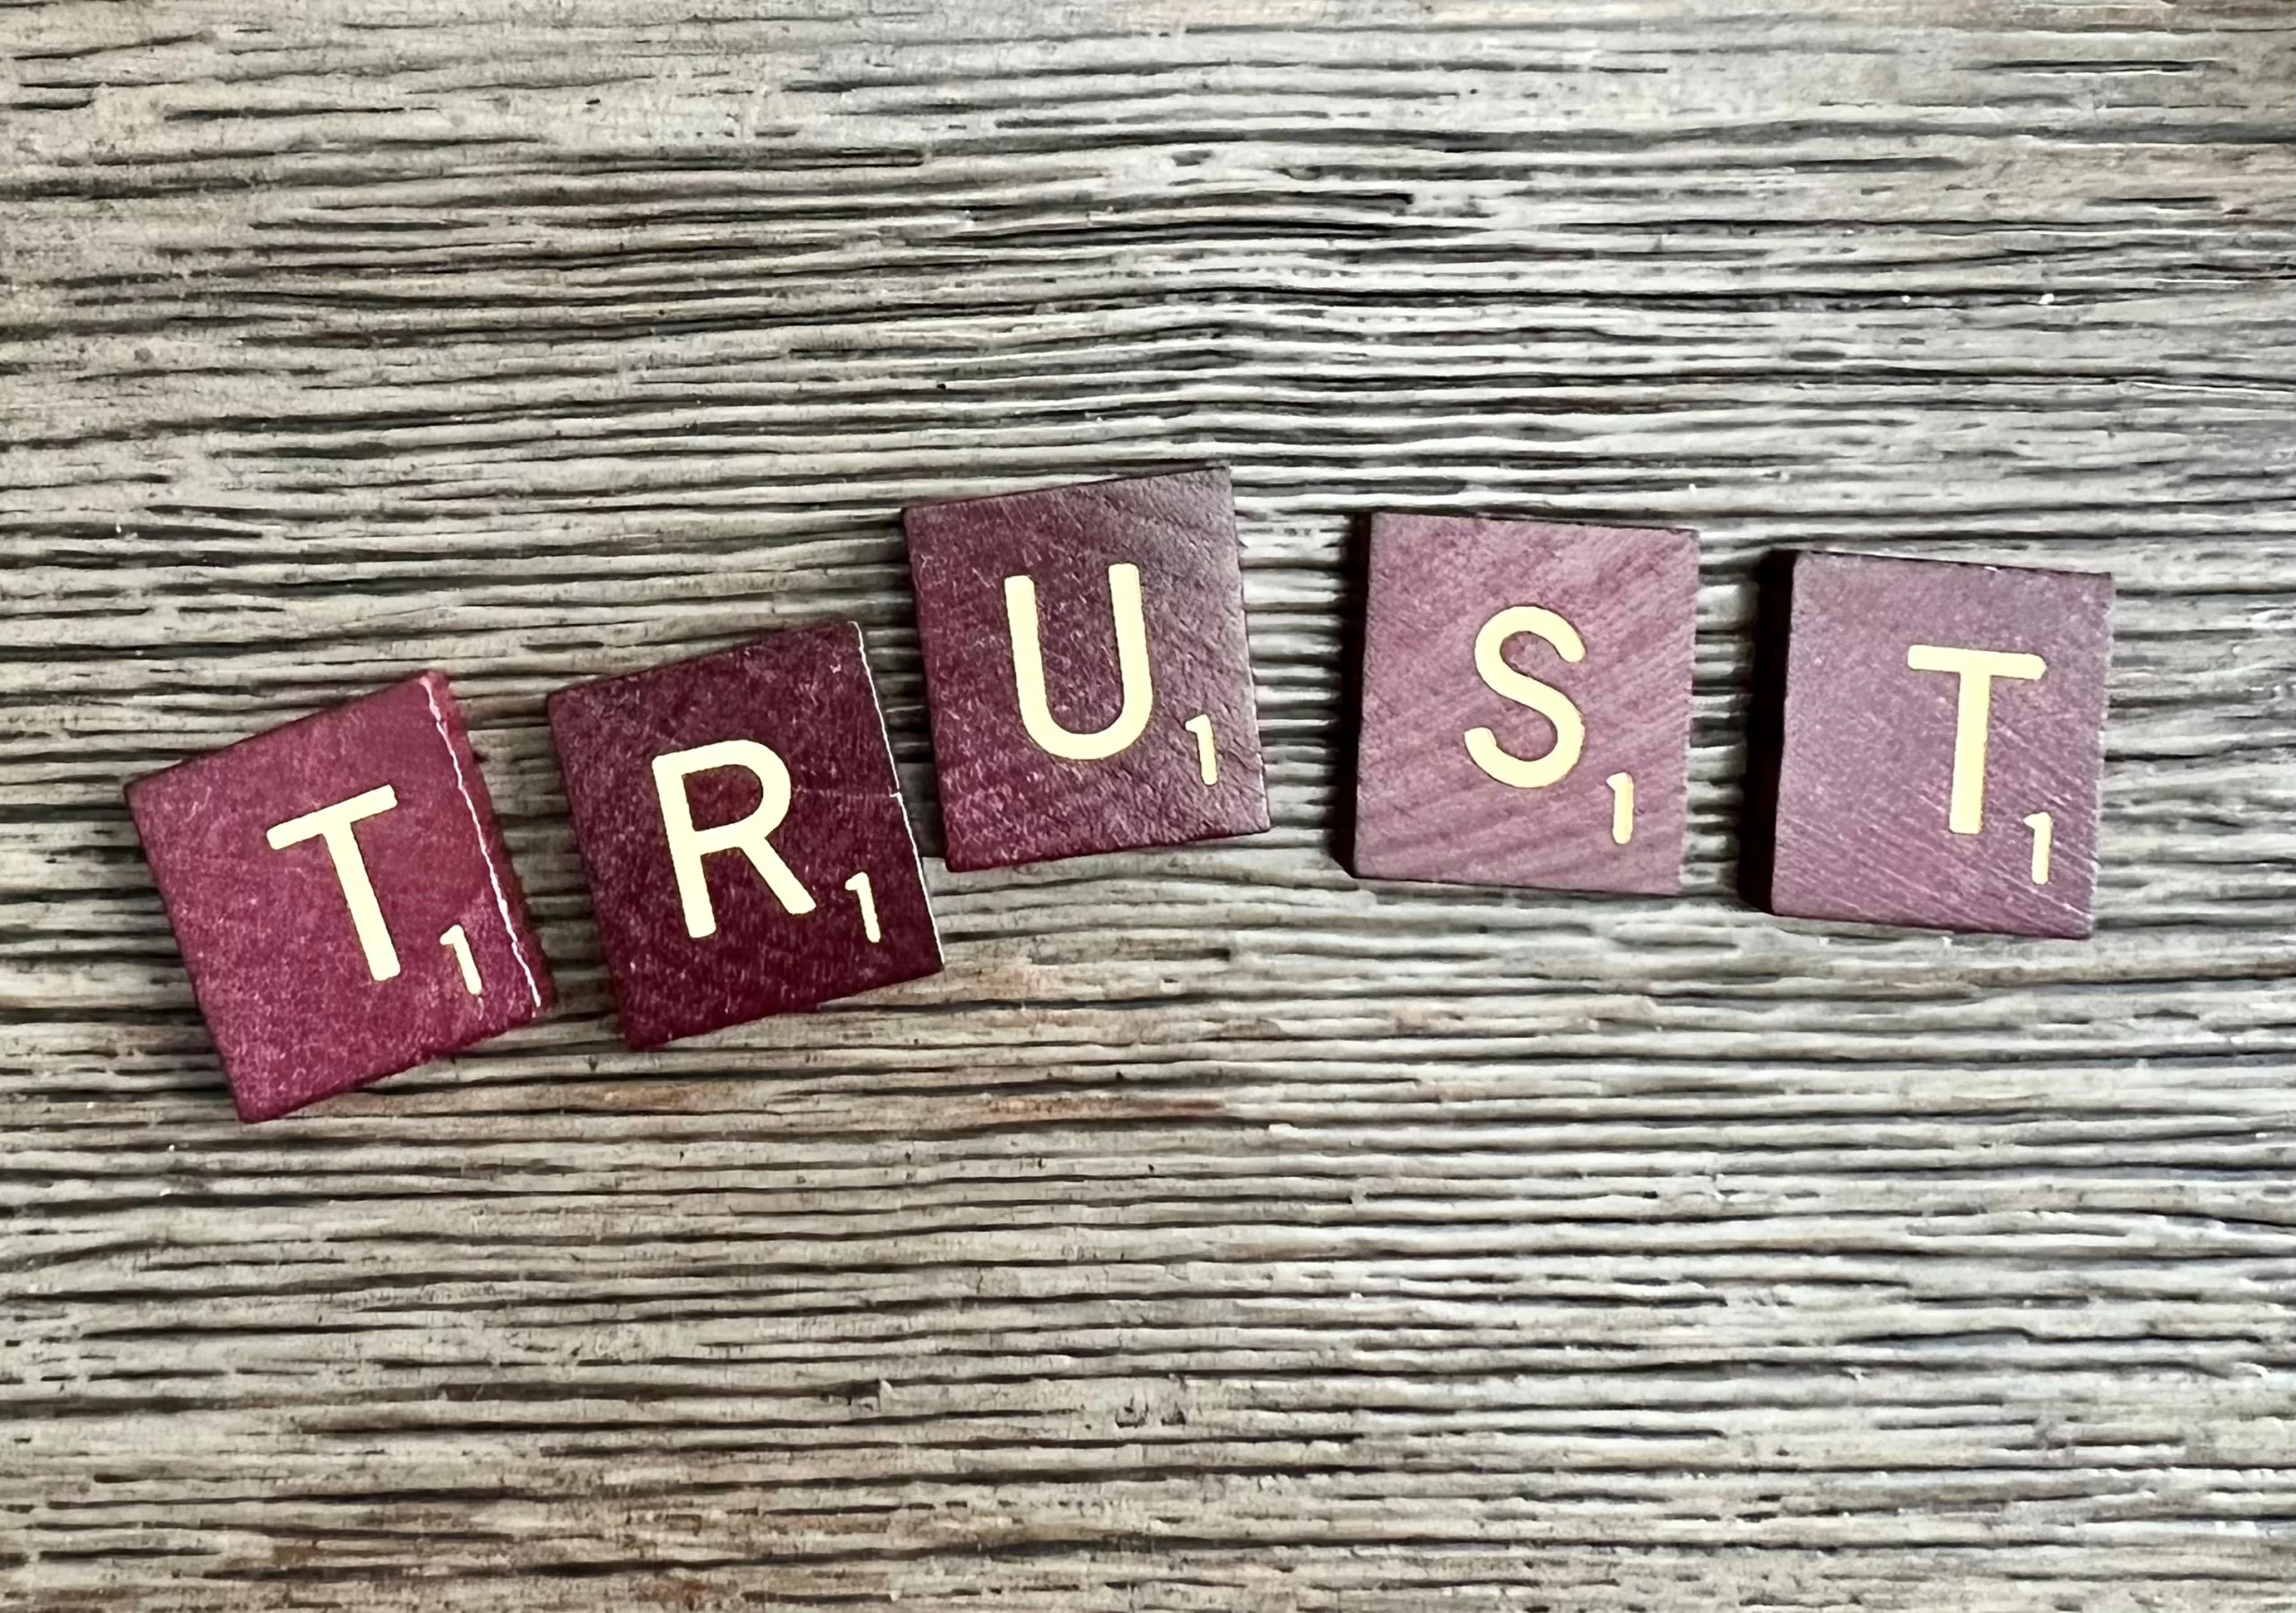 Destacar a palavra "trust" trazendo a importância da confiança entre cliente e marca.